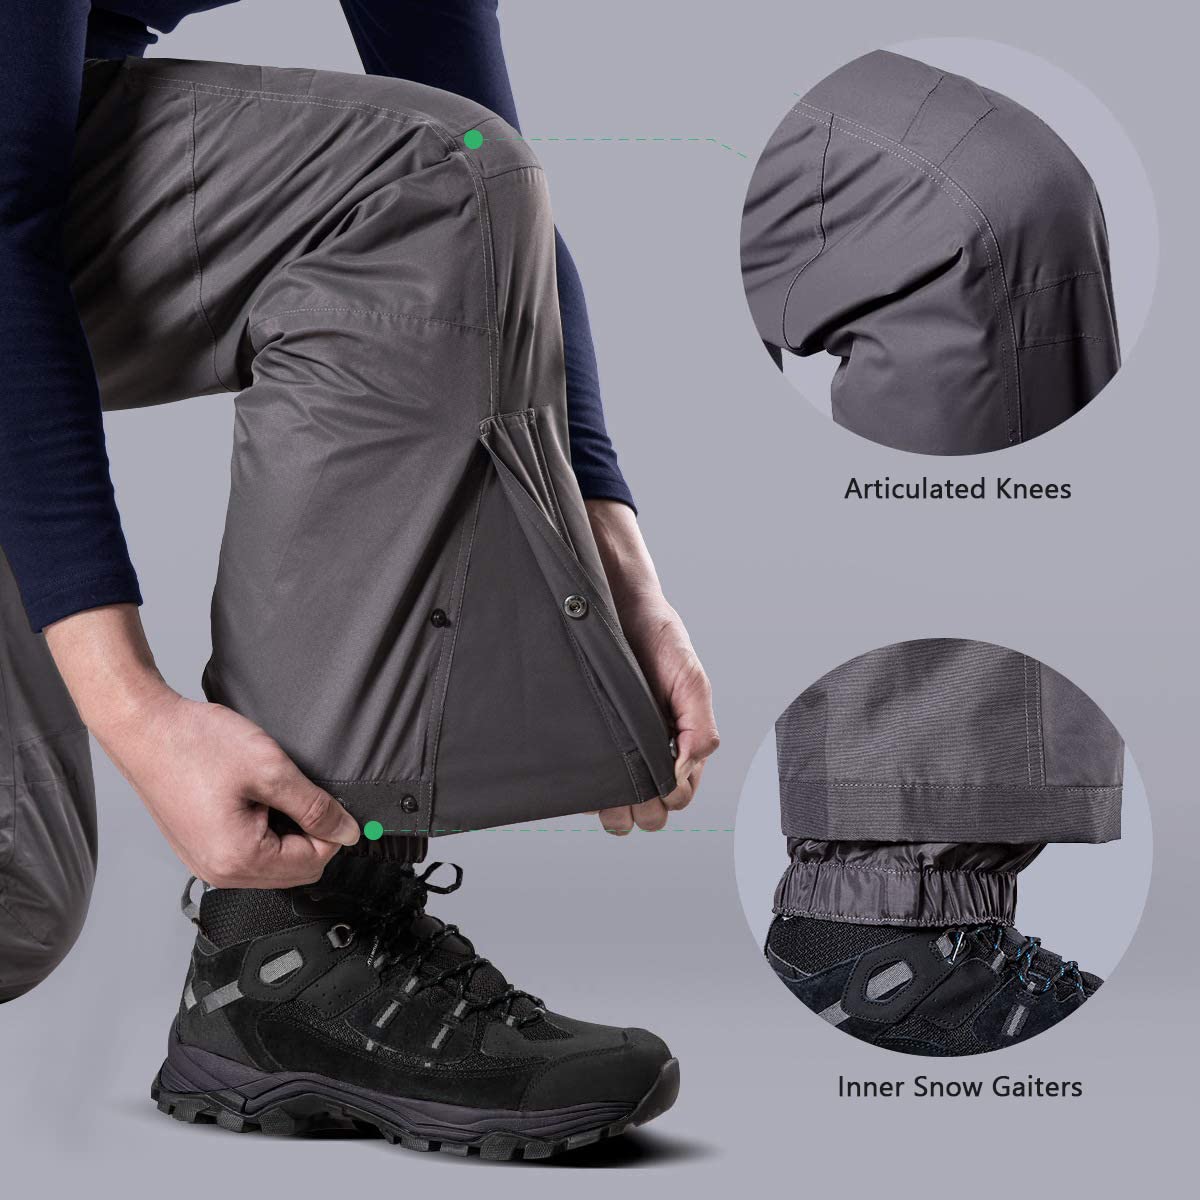 TSLA - Pantalones de nieve e invierno para hombre, impermeables, con  aislamiento térmico, resistentes a los desgarros y el viento, para esquiar  y